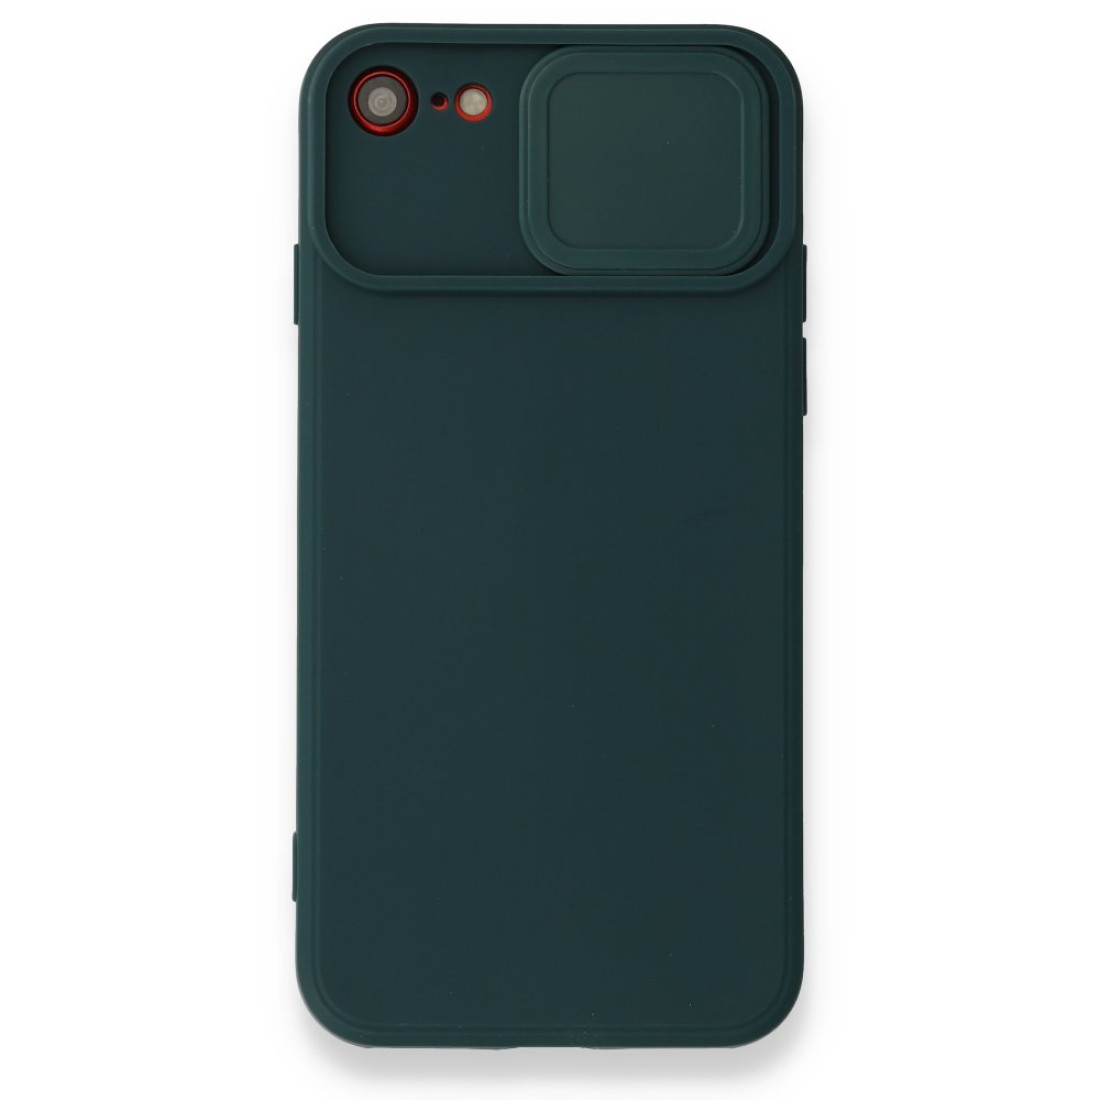 Apple iPhone SE 2020 Kılıf Color Lens Silikon - Yeşil